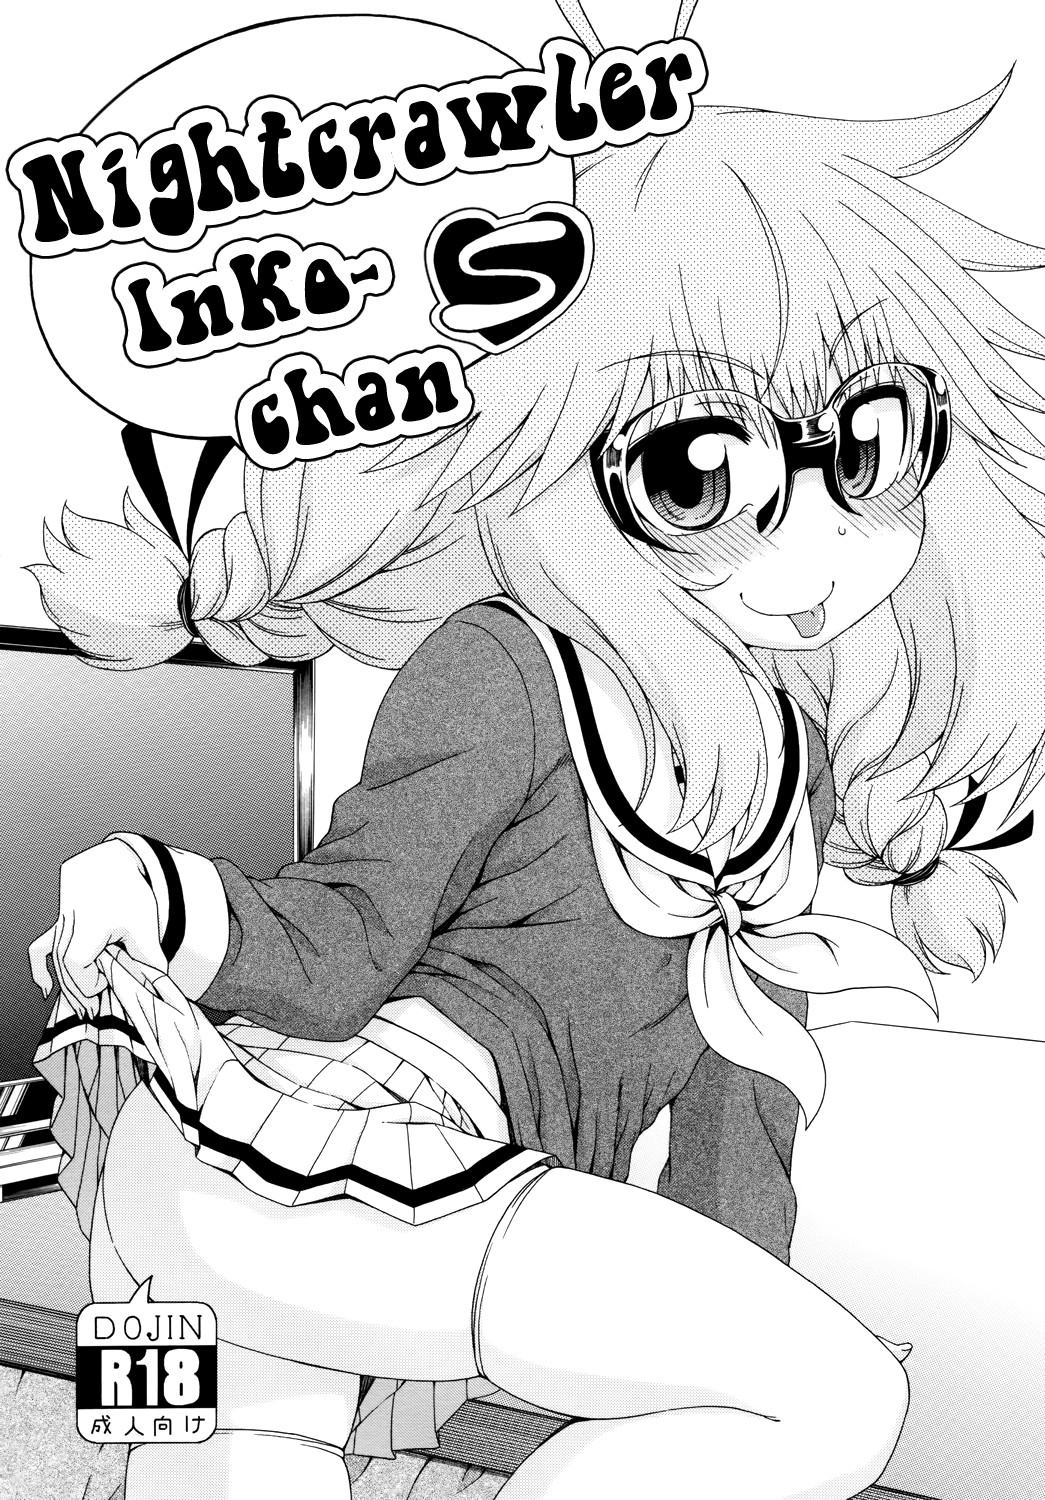 Hentai Manga Comic-Nightcrawler Inko-chan S-Read-1